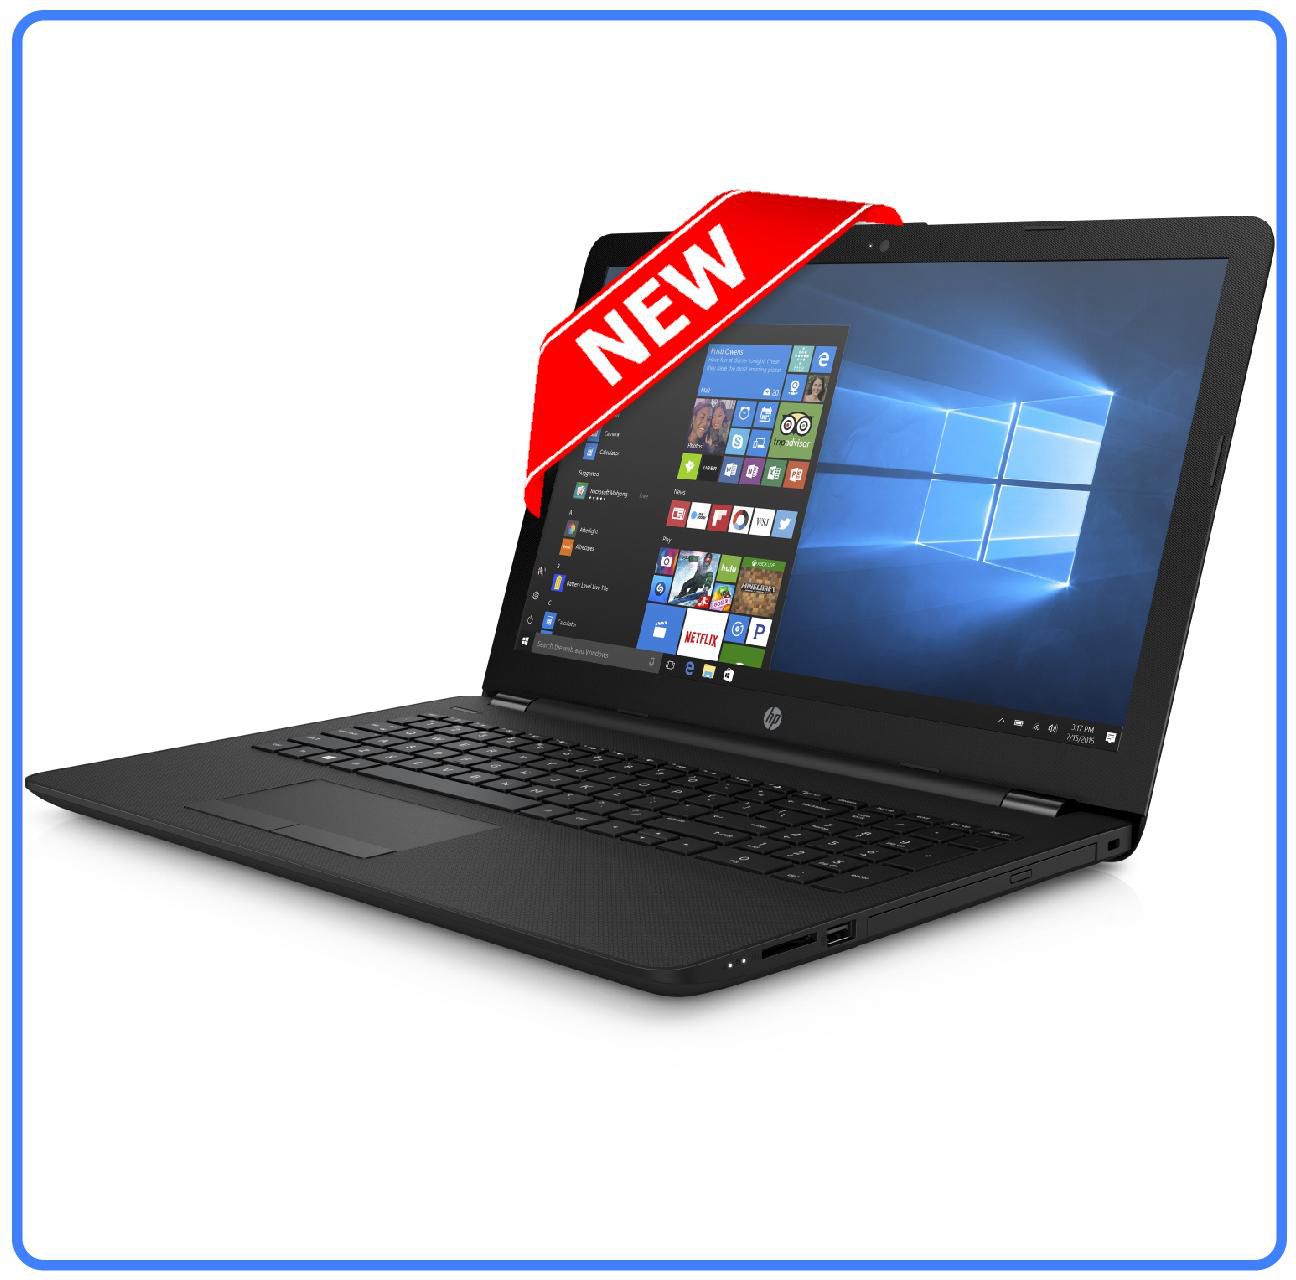 HP Notebook 14-bs077nia Intel Celeron N3060 @1.6GHz 4GB RAM 500GB HDD DVD-rw HDMI WiFi 14" Display Free DOS Black